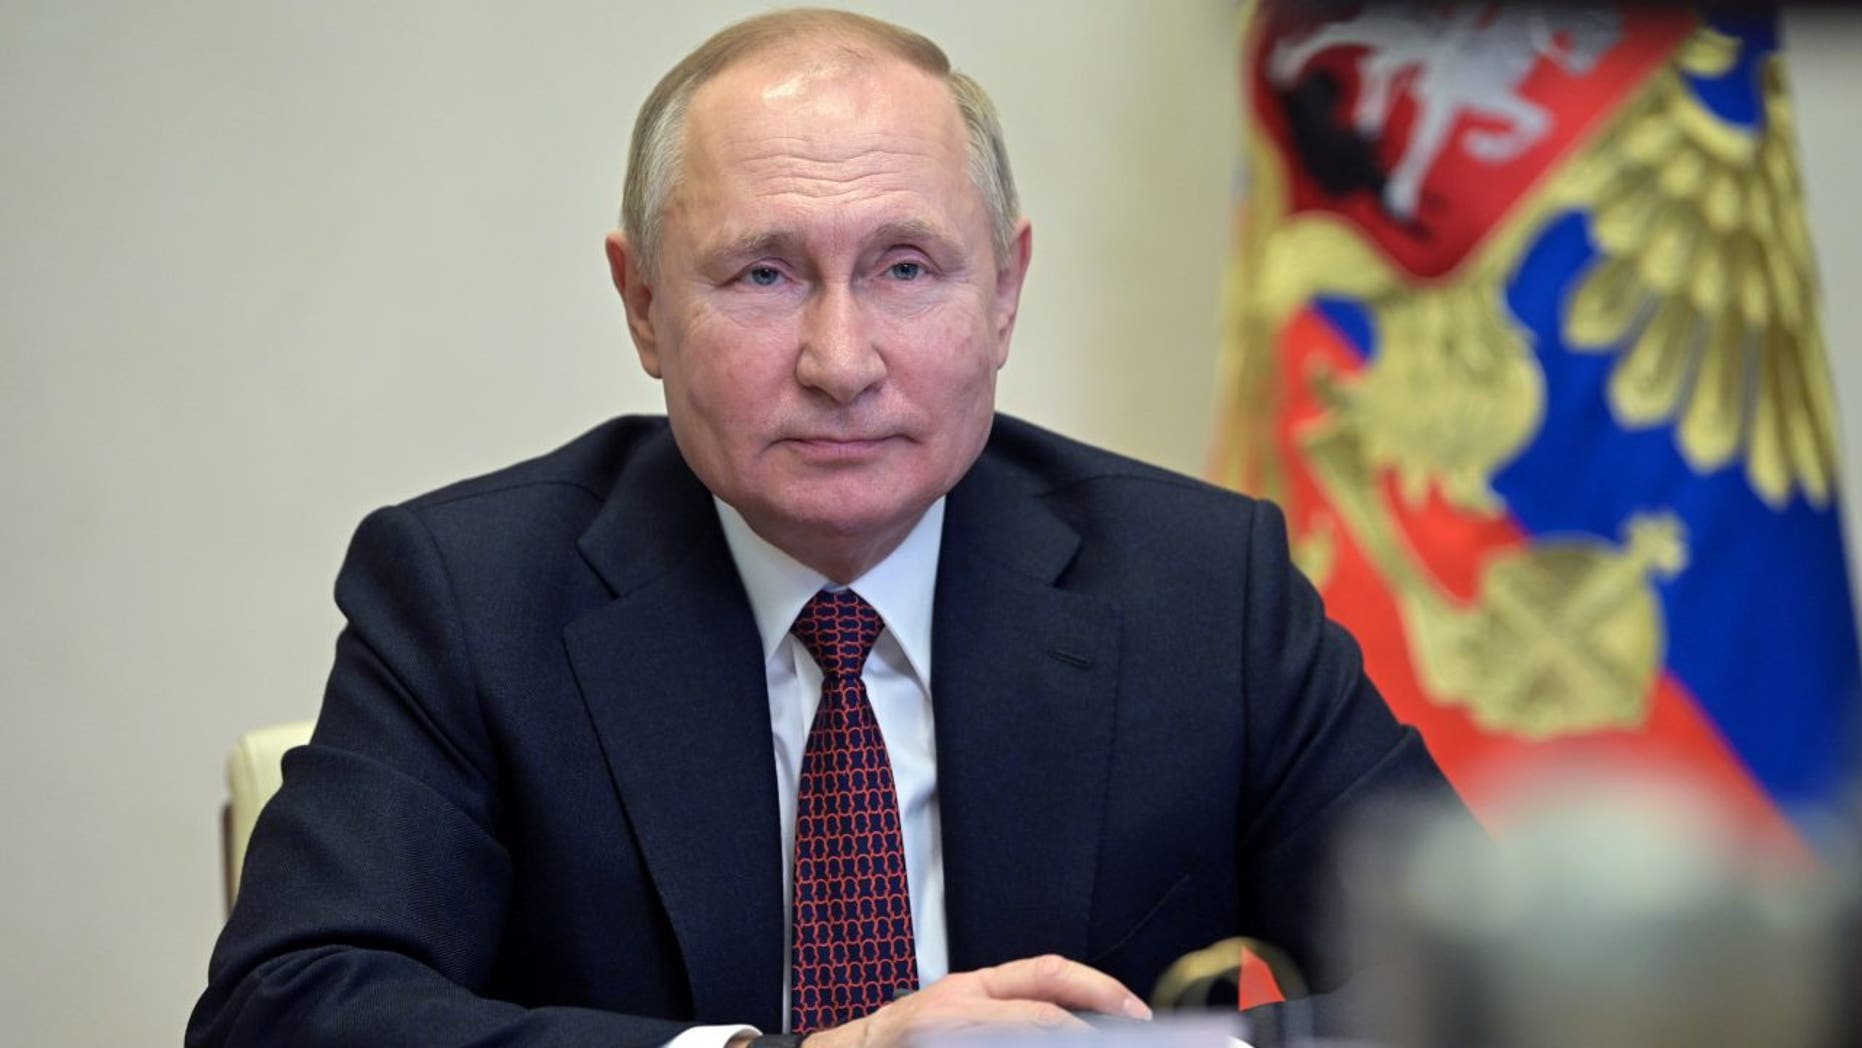 TT Putin ban bố thiết quân luật ở 4 tỉnh vừa sáp nhập từ Ukraine, Kiev nói gì? - Ảnh 1.